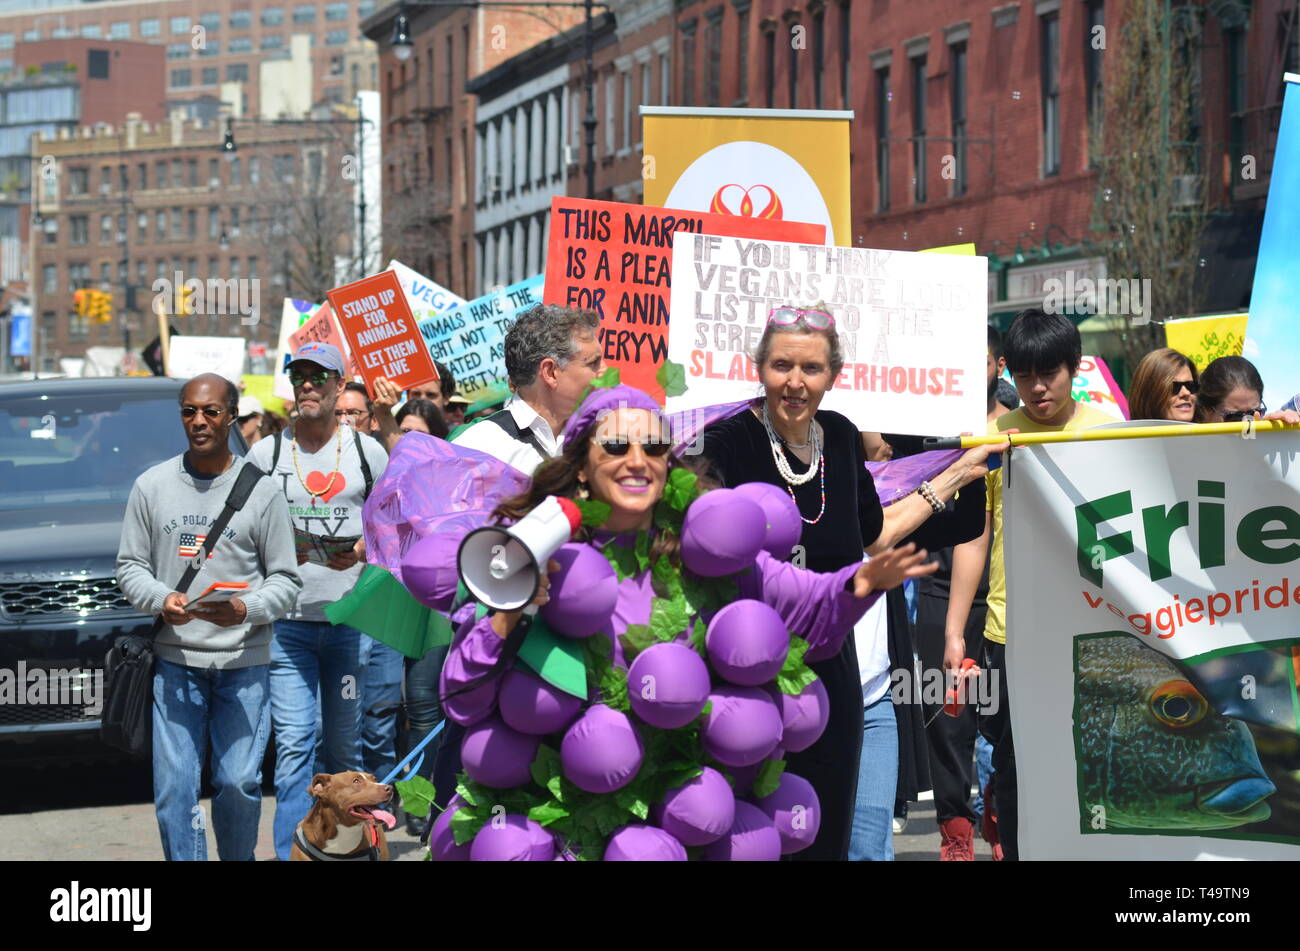 Eine Frau mit Megaphon und Banner während des jährlichen Veggie Pride Parade gesehen. Die Parade feiert Veganismus und Übungen die erste änderung Rechte derjenigen, die Gewalt gegen andere Tiere ablehnen. Stockfoto